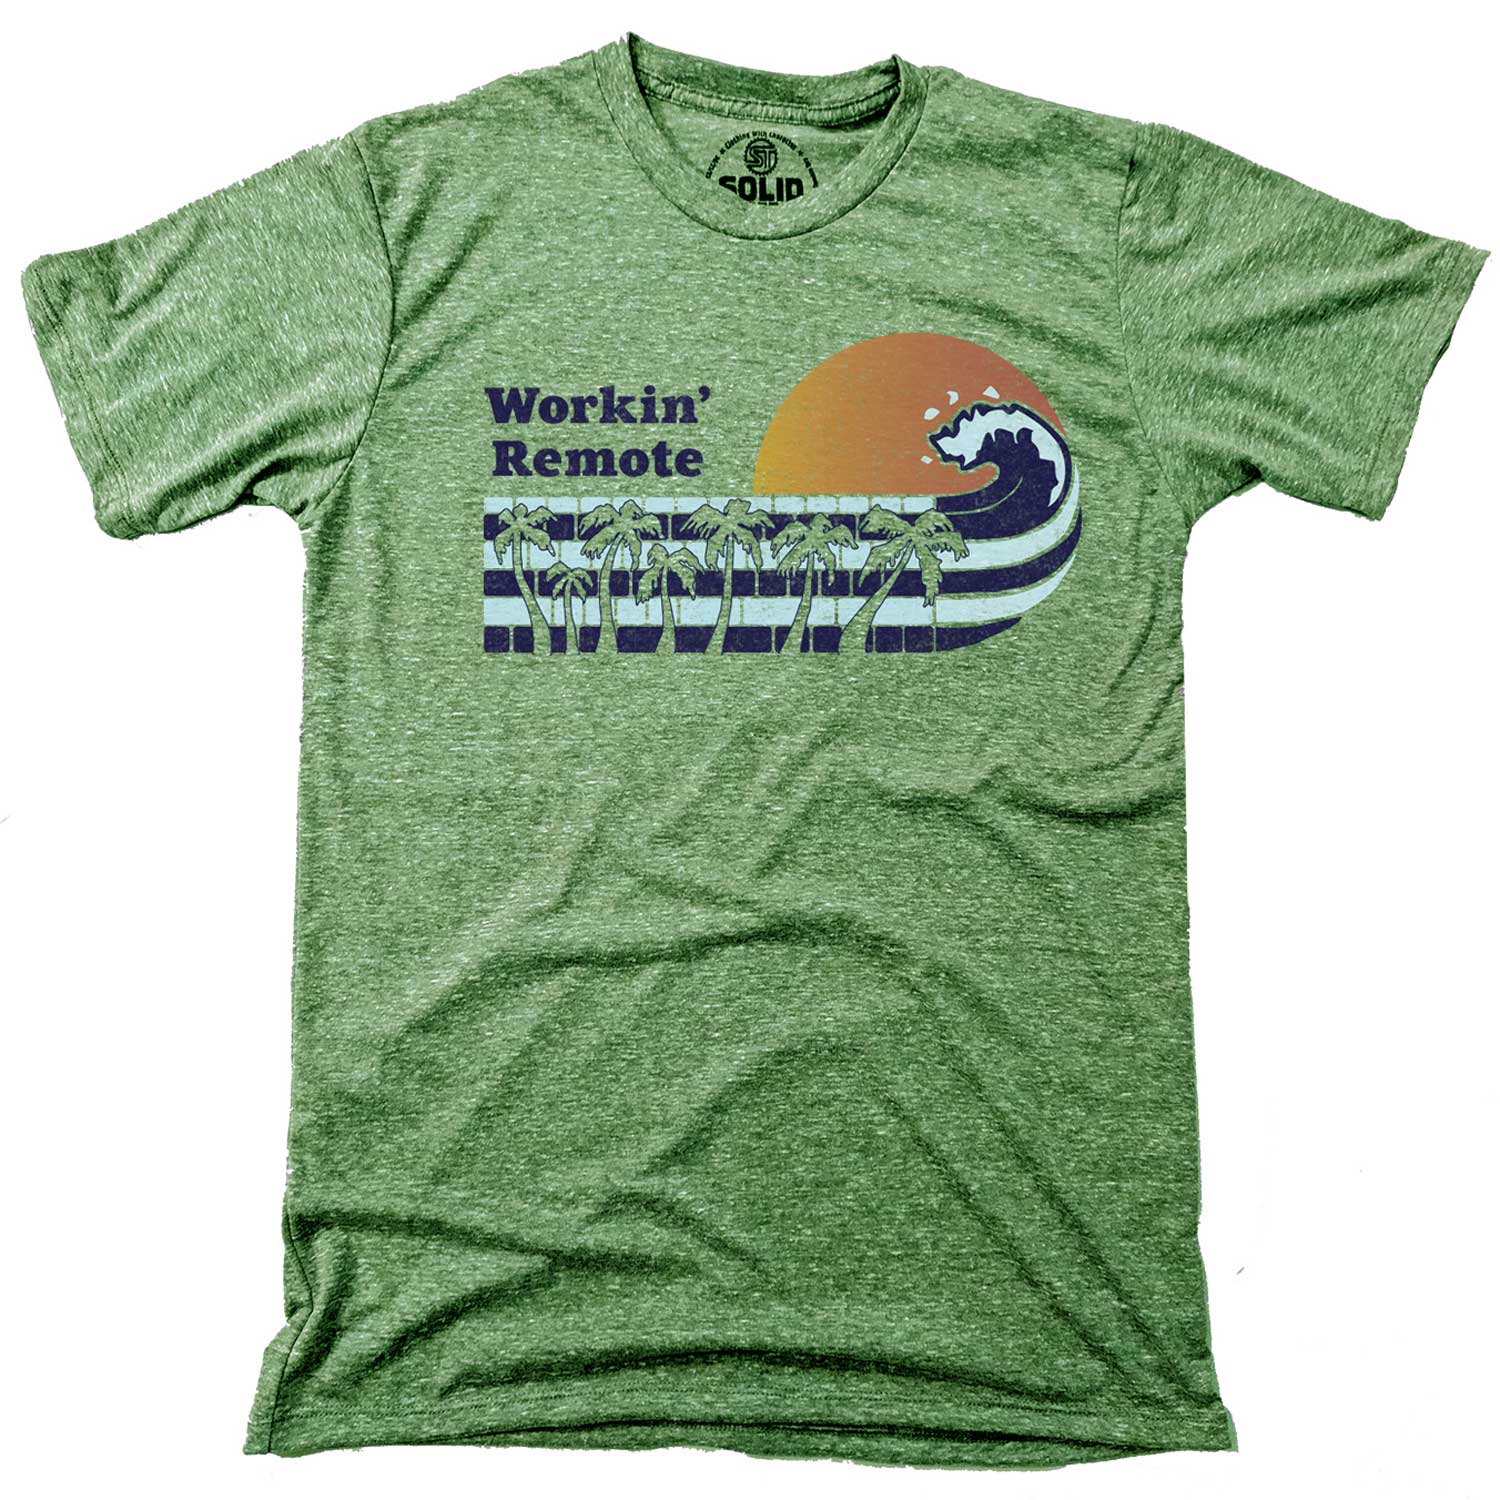 Workin' Remote T-shirt